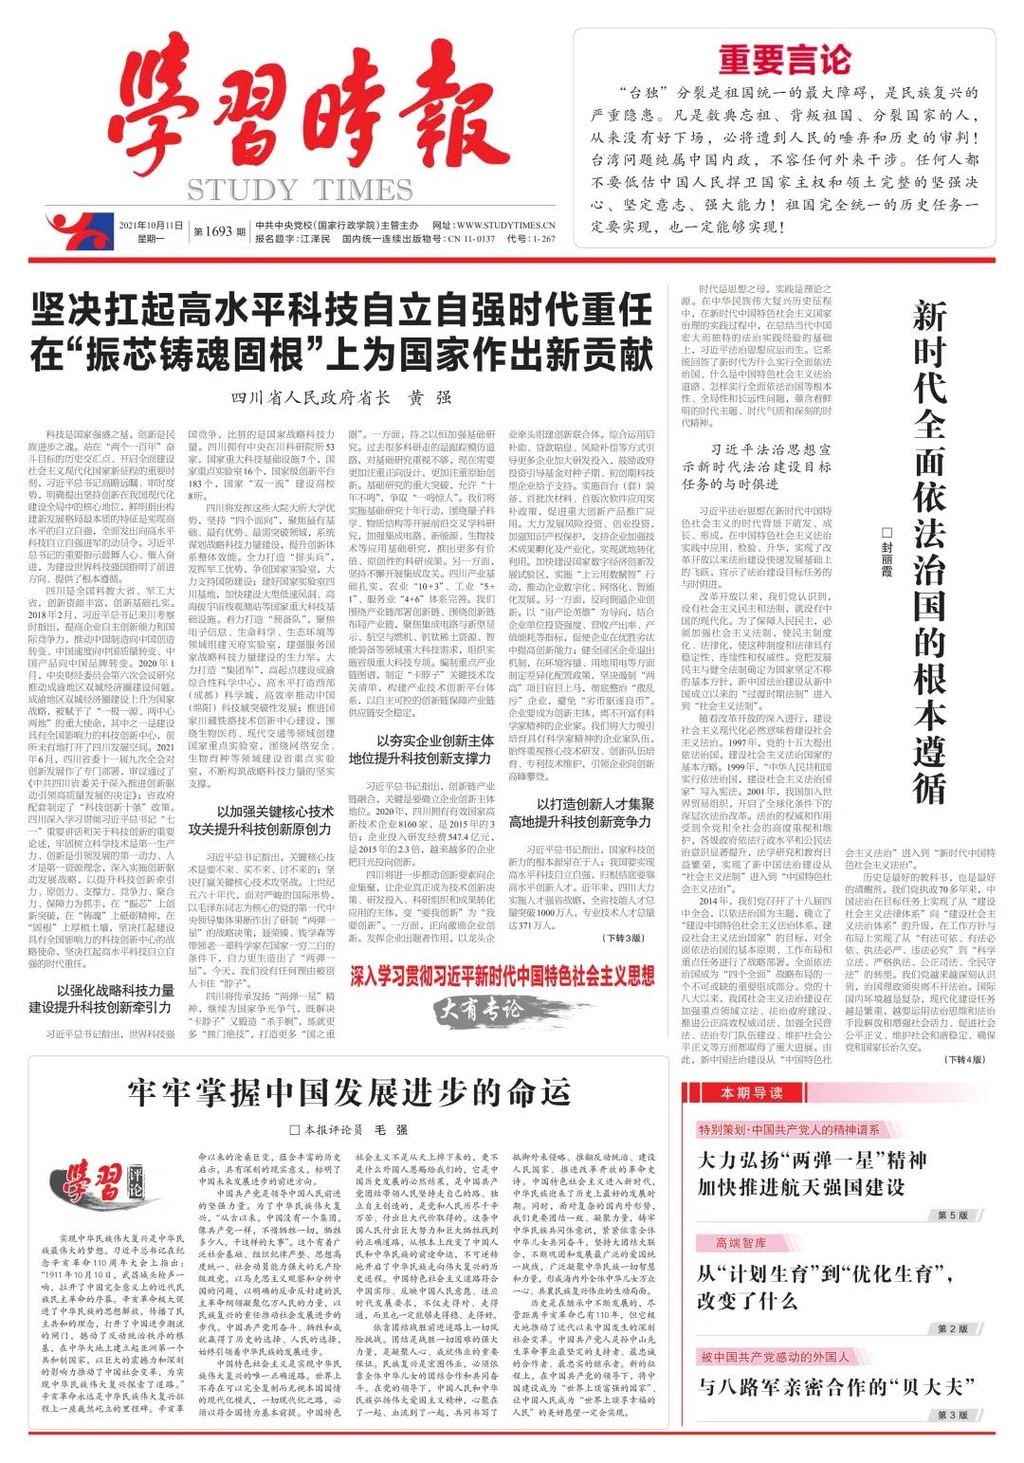 黄强省长在《学习时报》发表署名文章： 坚决扛起高水平科技自立自强时代重任  在“振芯铸魂固根”上为国家作出新贡献